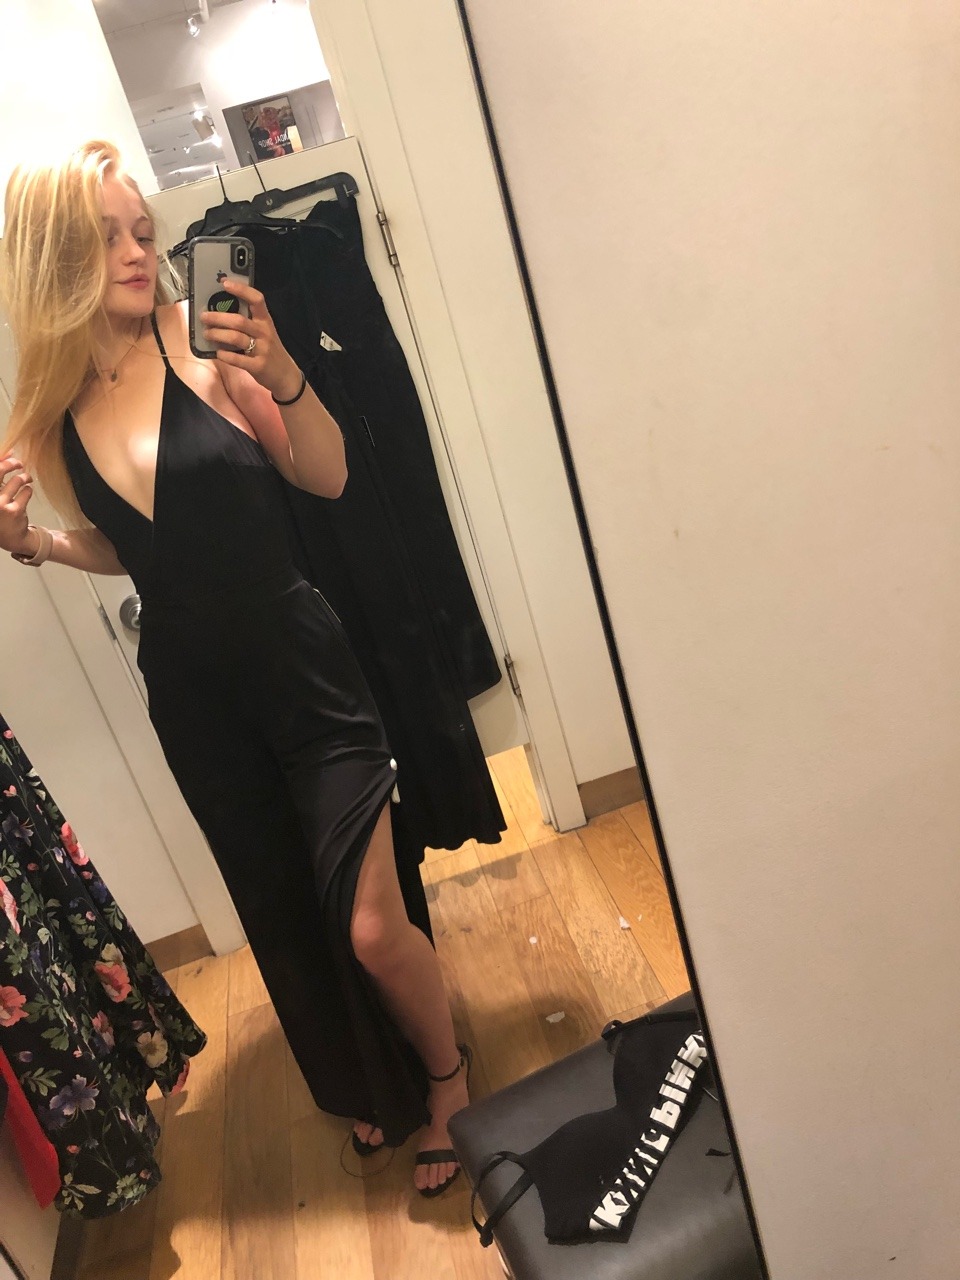 Teen bra dressing room selfies